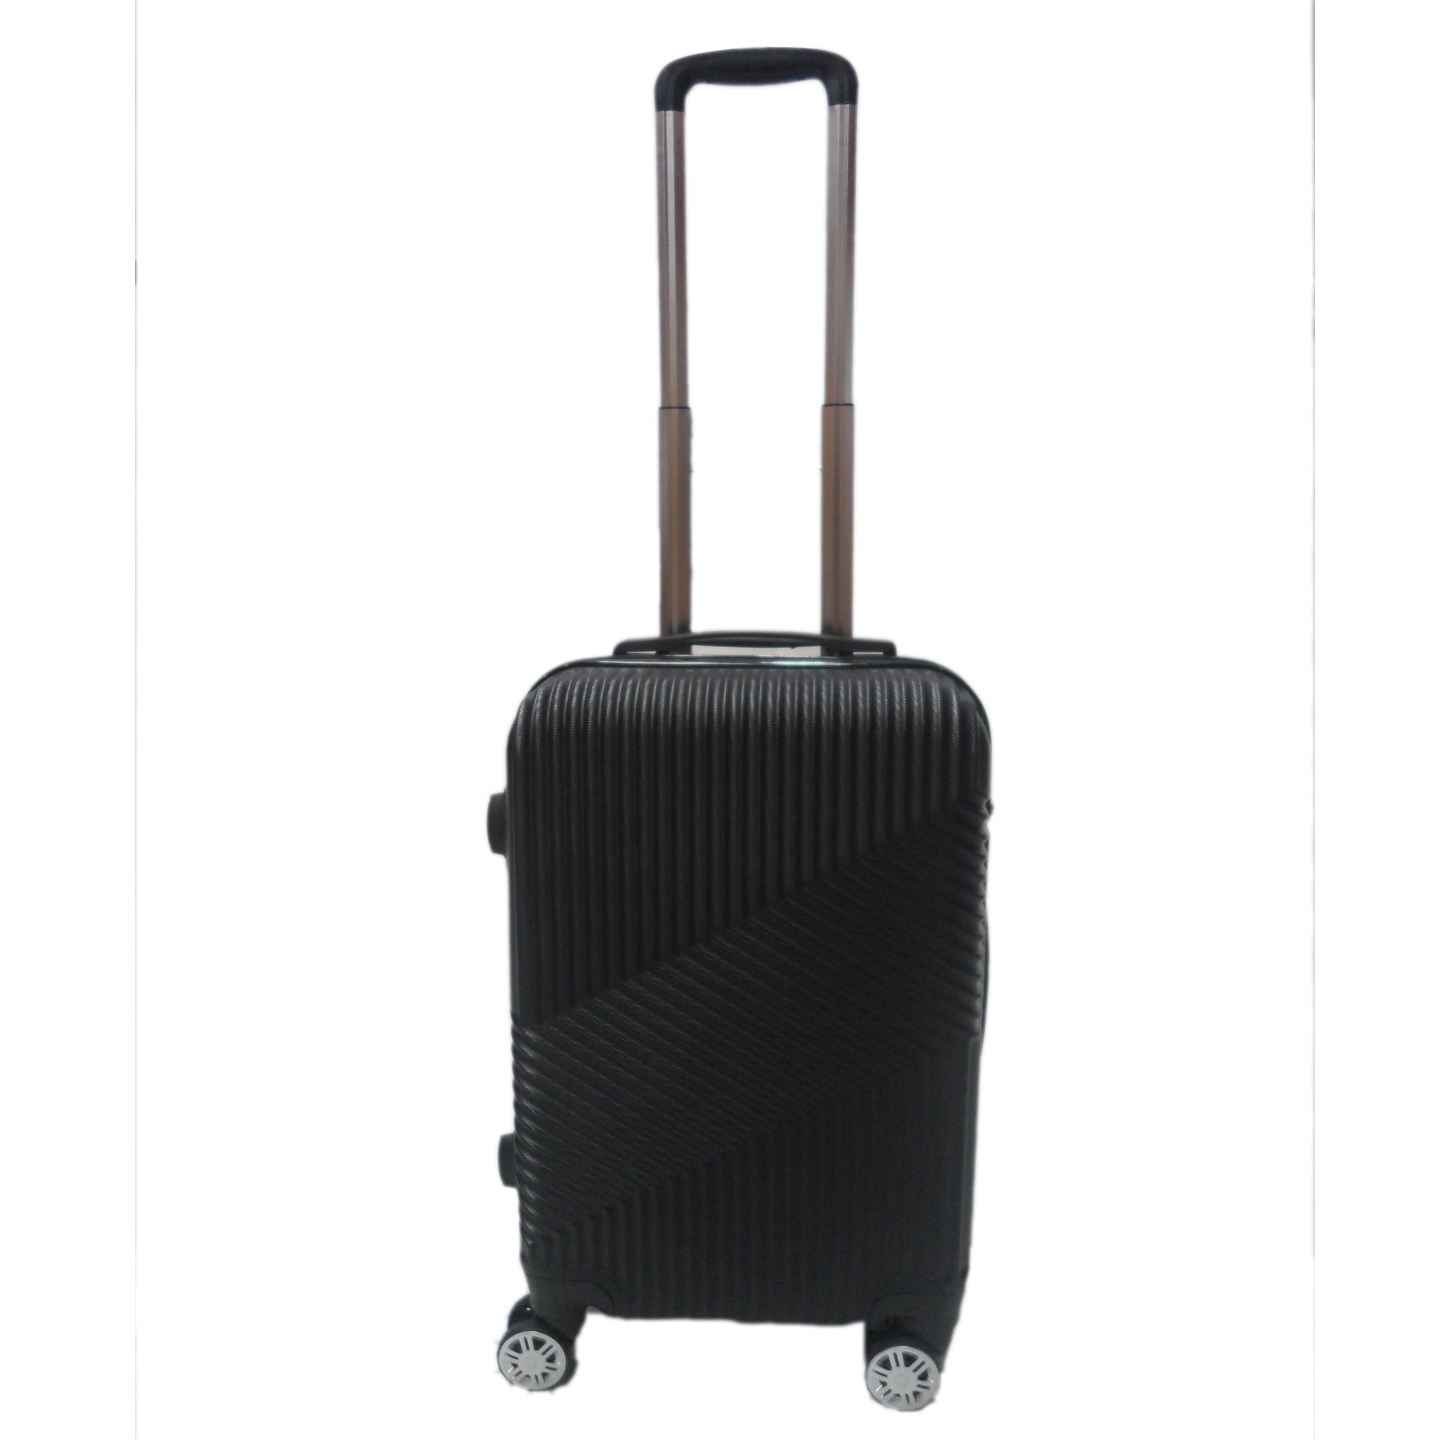 RV-51 Elegant Hard Box Luggage - Black  20 inch